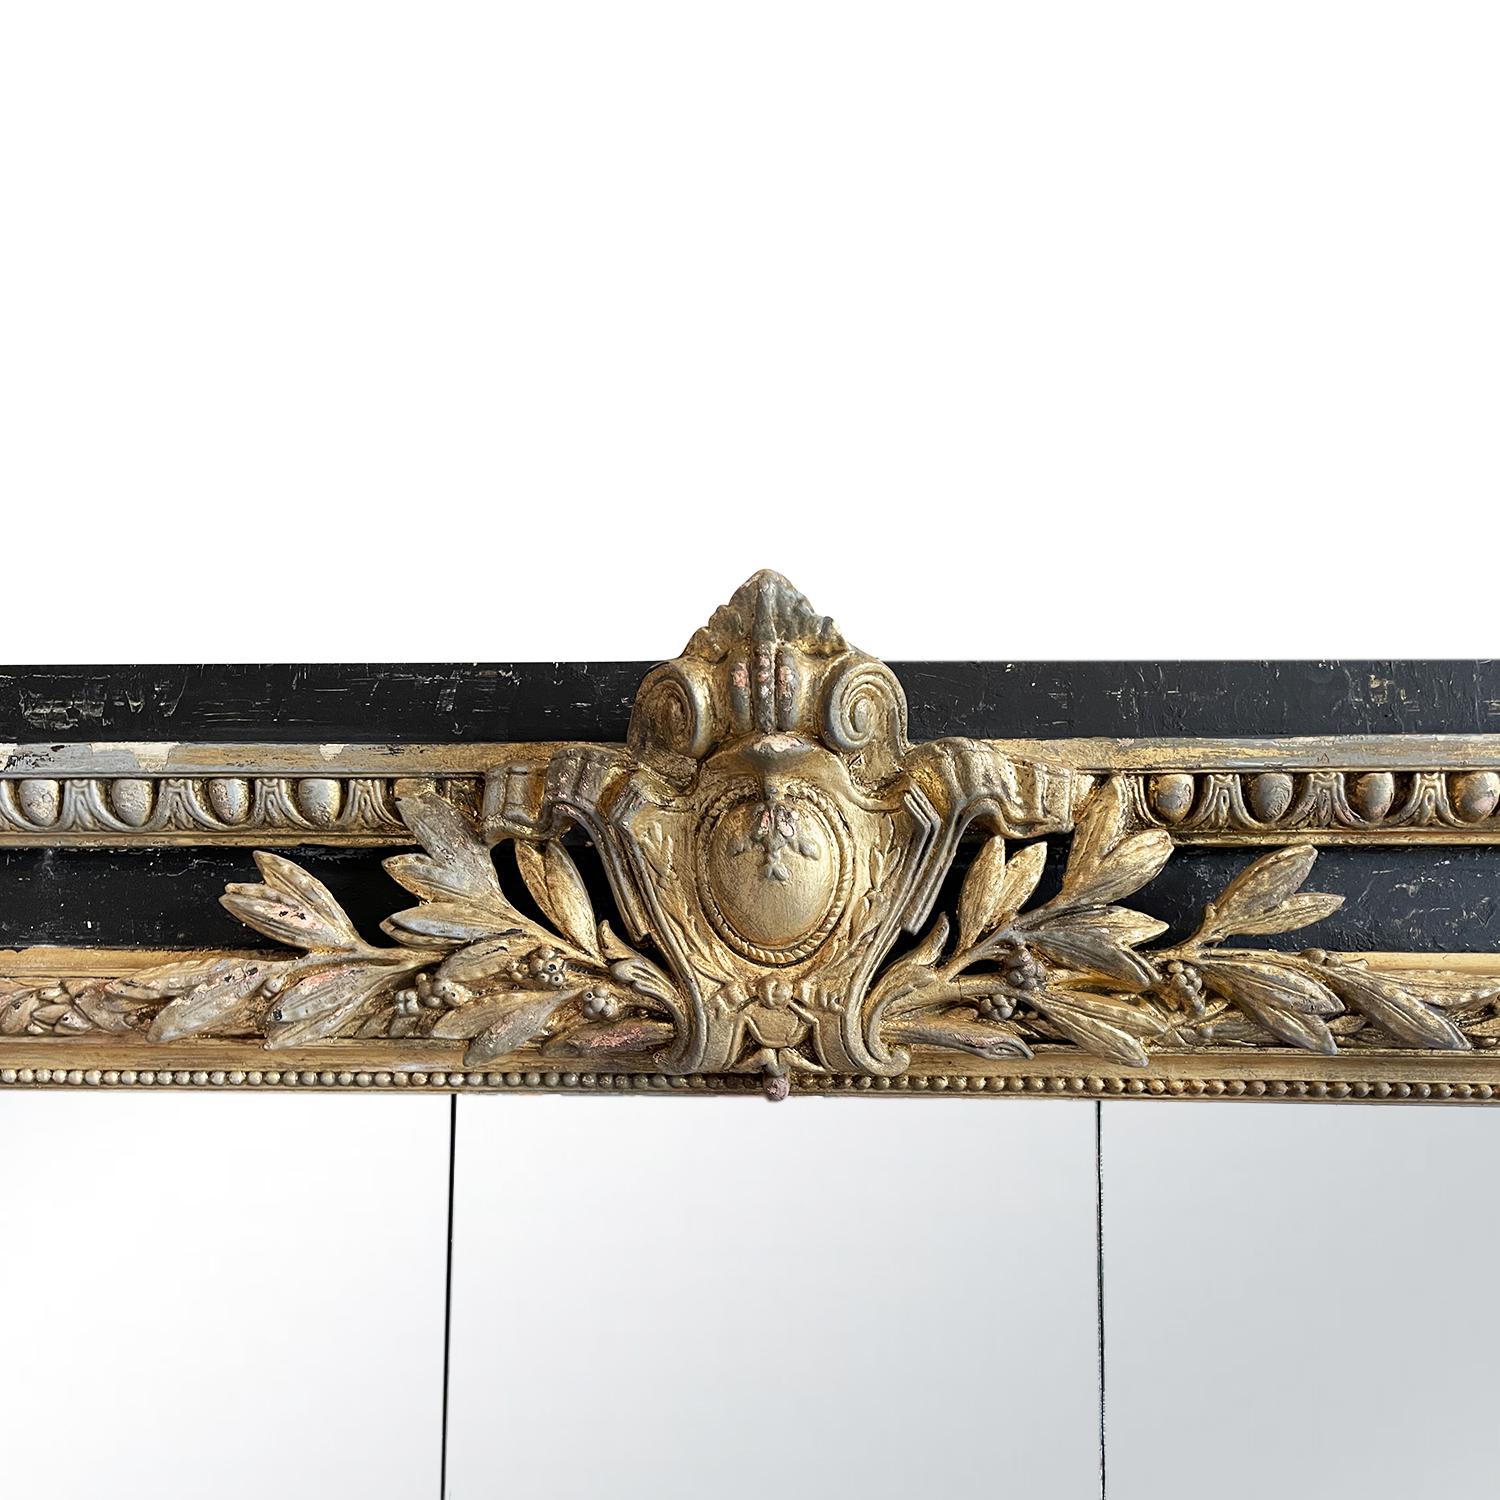 Paire de grands miroirs italiens Condit du XIXe siècle patinés en noir avec des détails de cadre dorés et un bouclier centré avec des décorations de feuilles dans le style néoclassique, en bon état. Les miroirs anciens sont constitués de leur glace